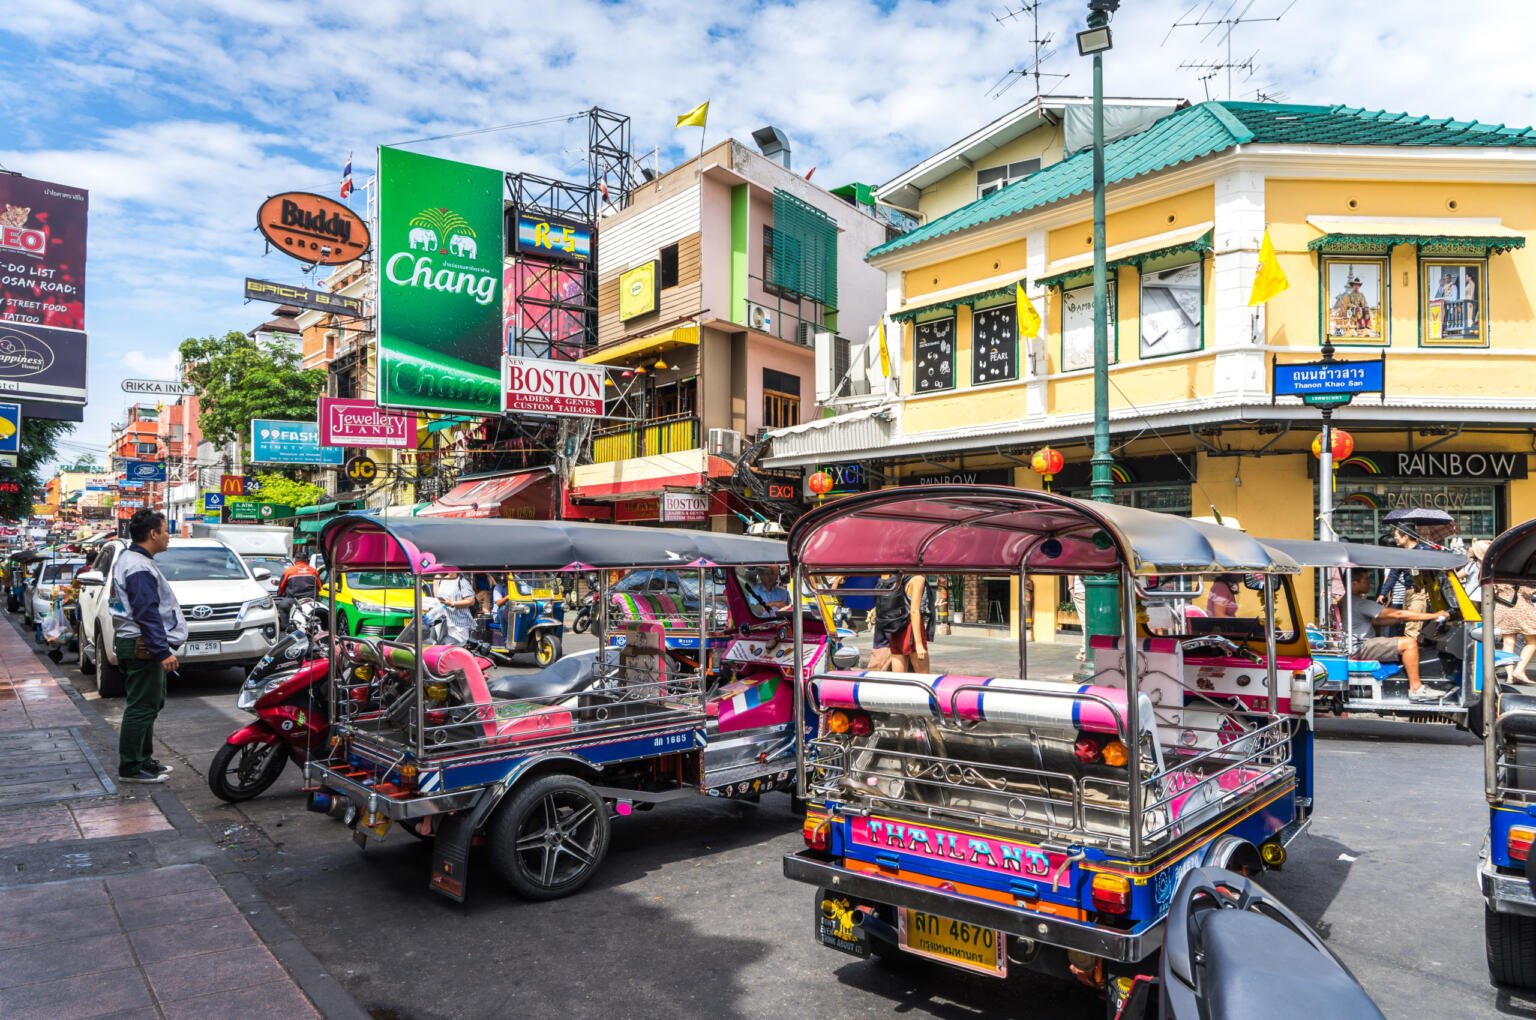 Khao San Road, Bangkok